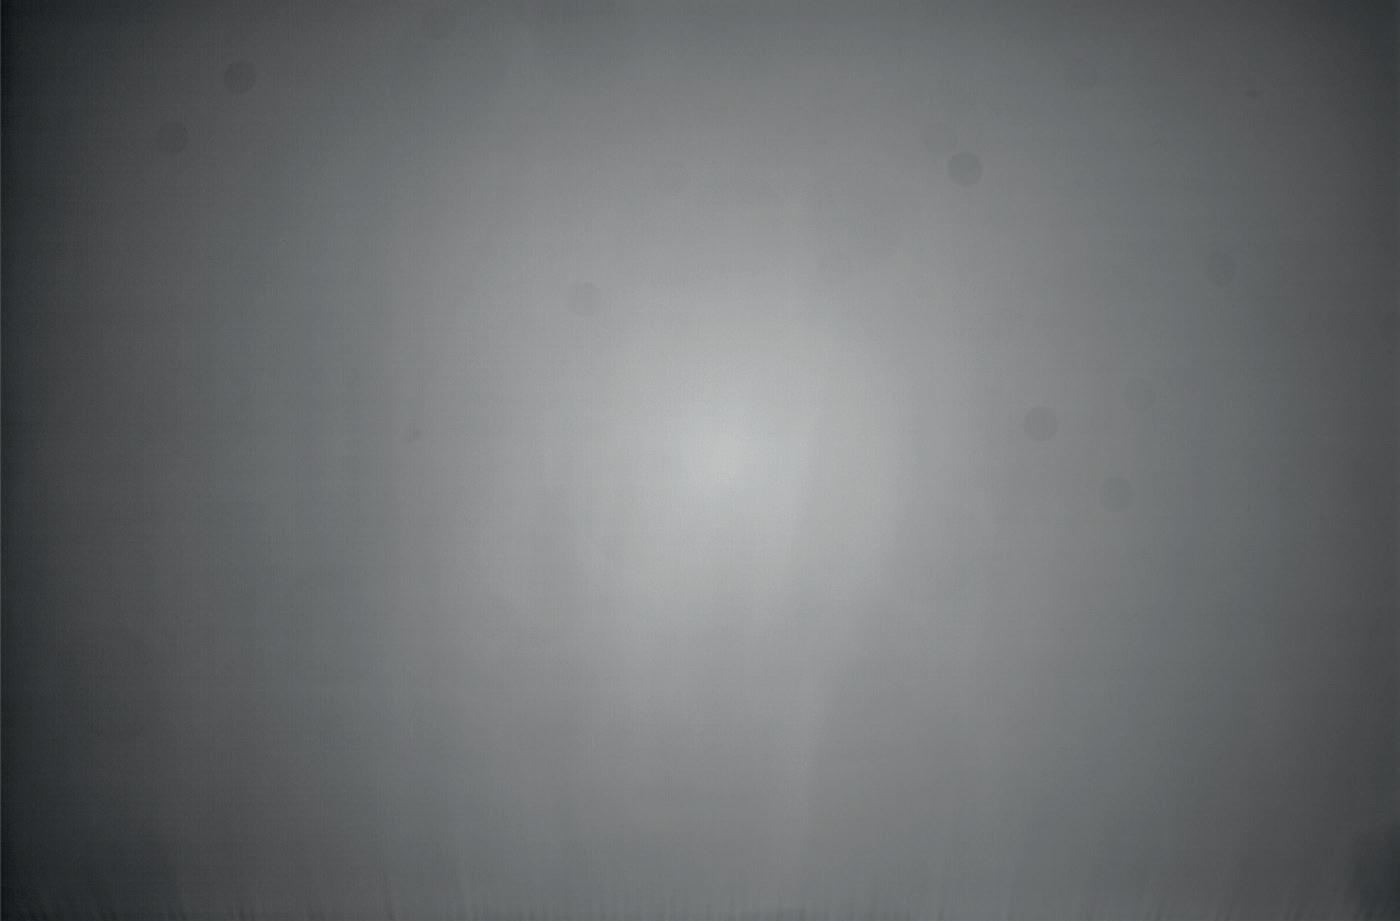 Image de champ aplati typique avec vignettage du télescope et taches de poussière rondes. M. Weigand